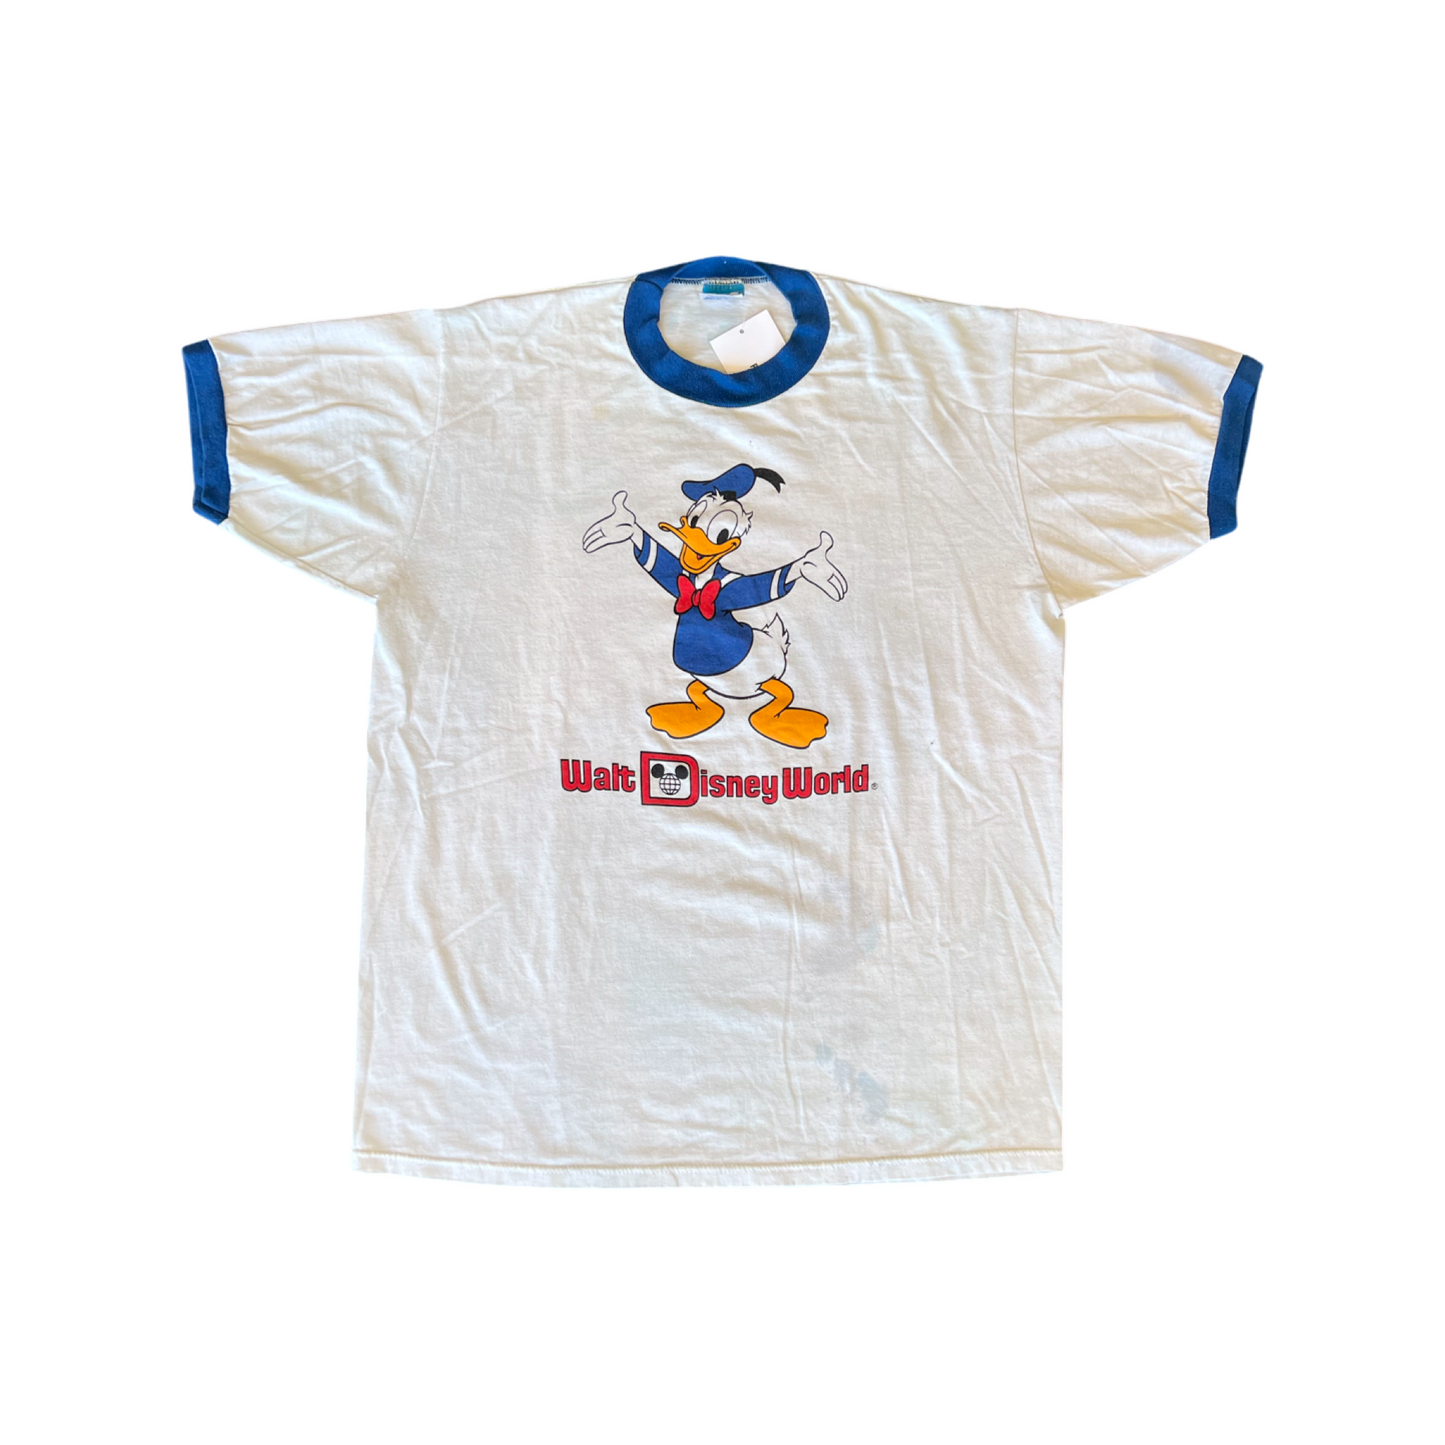 Vintage Donald Duck Tee